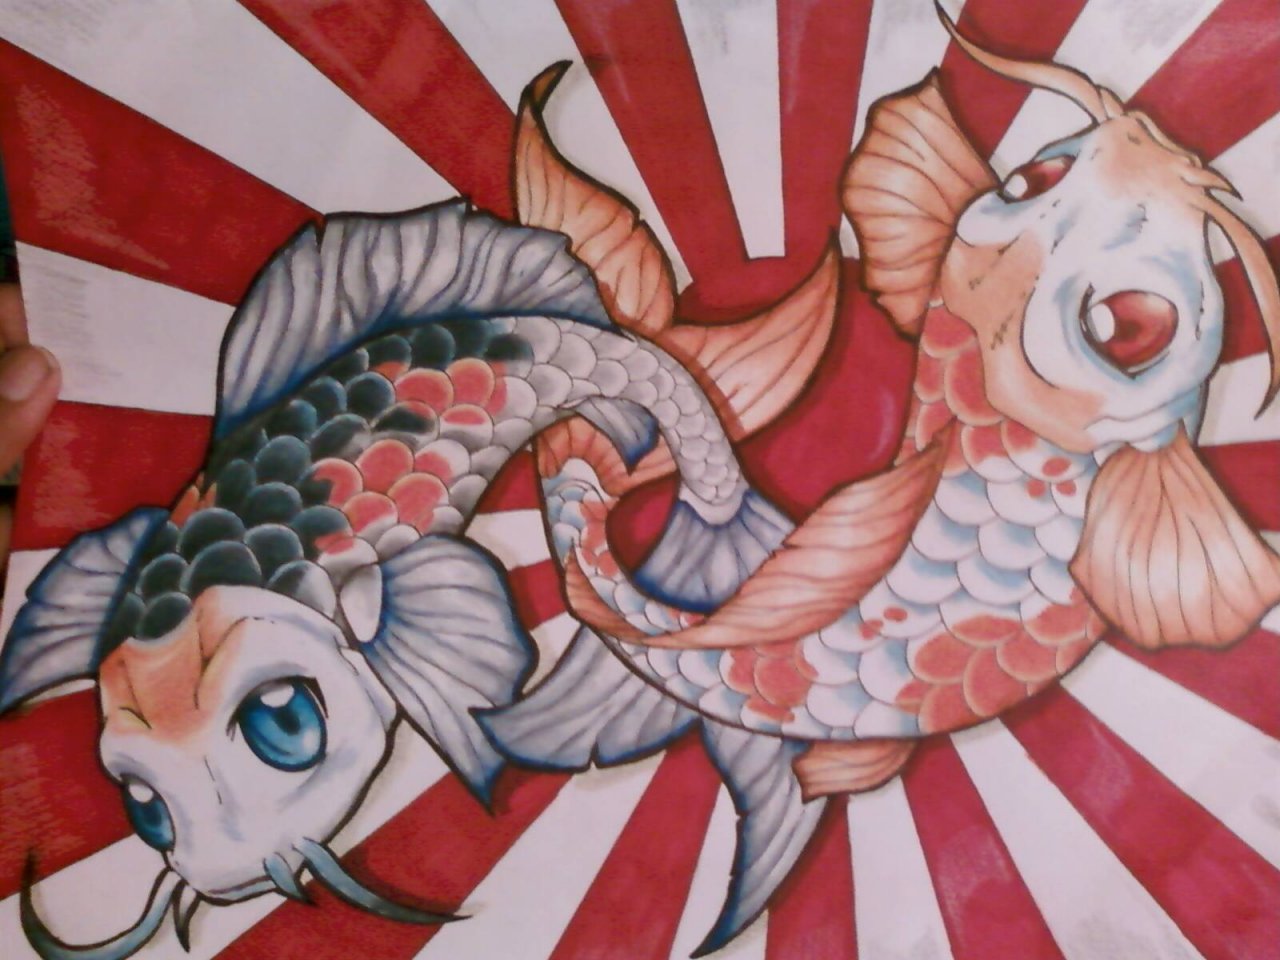 Koi Fish by CrimsonGrrl on DeviantArt